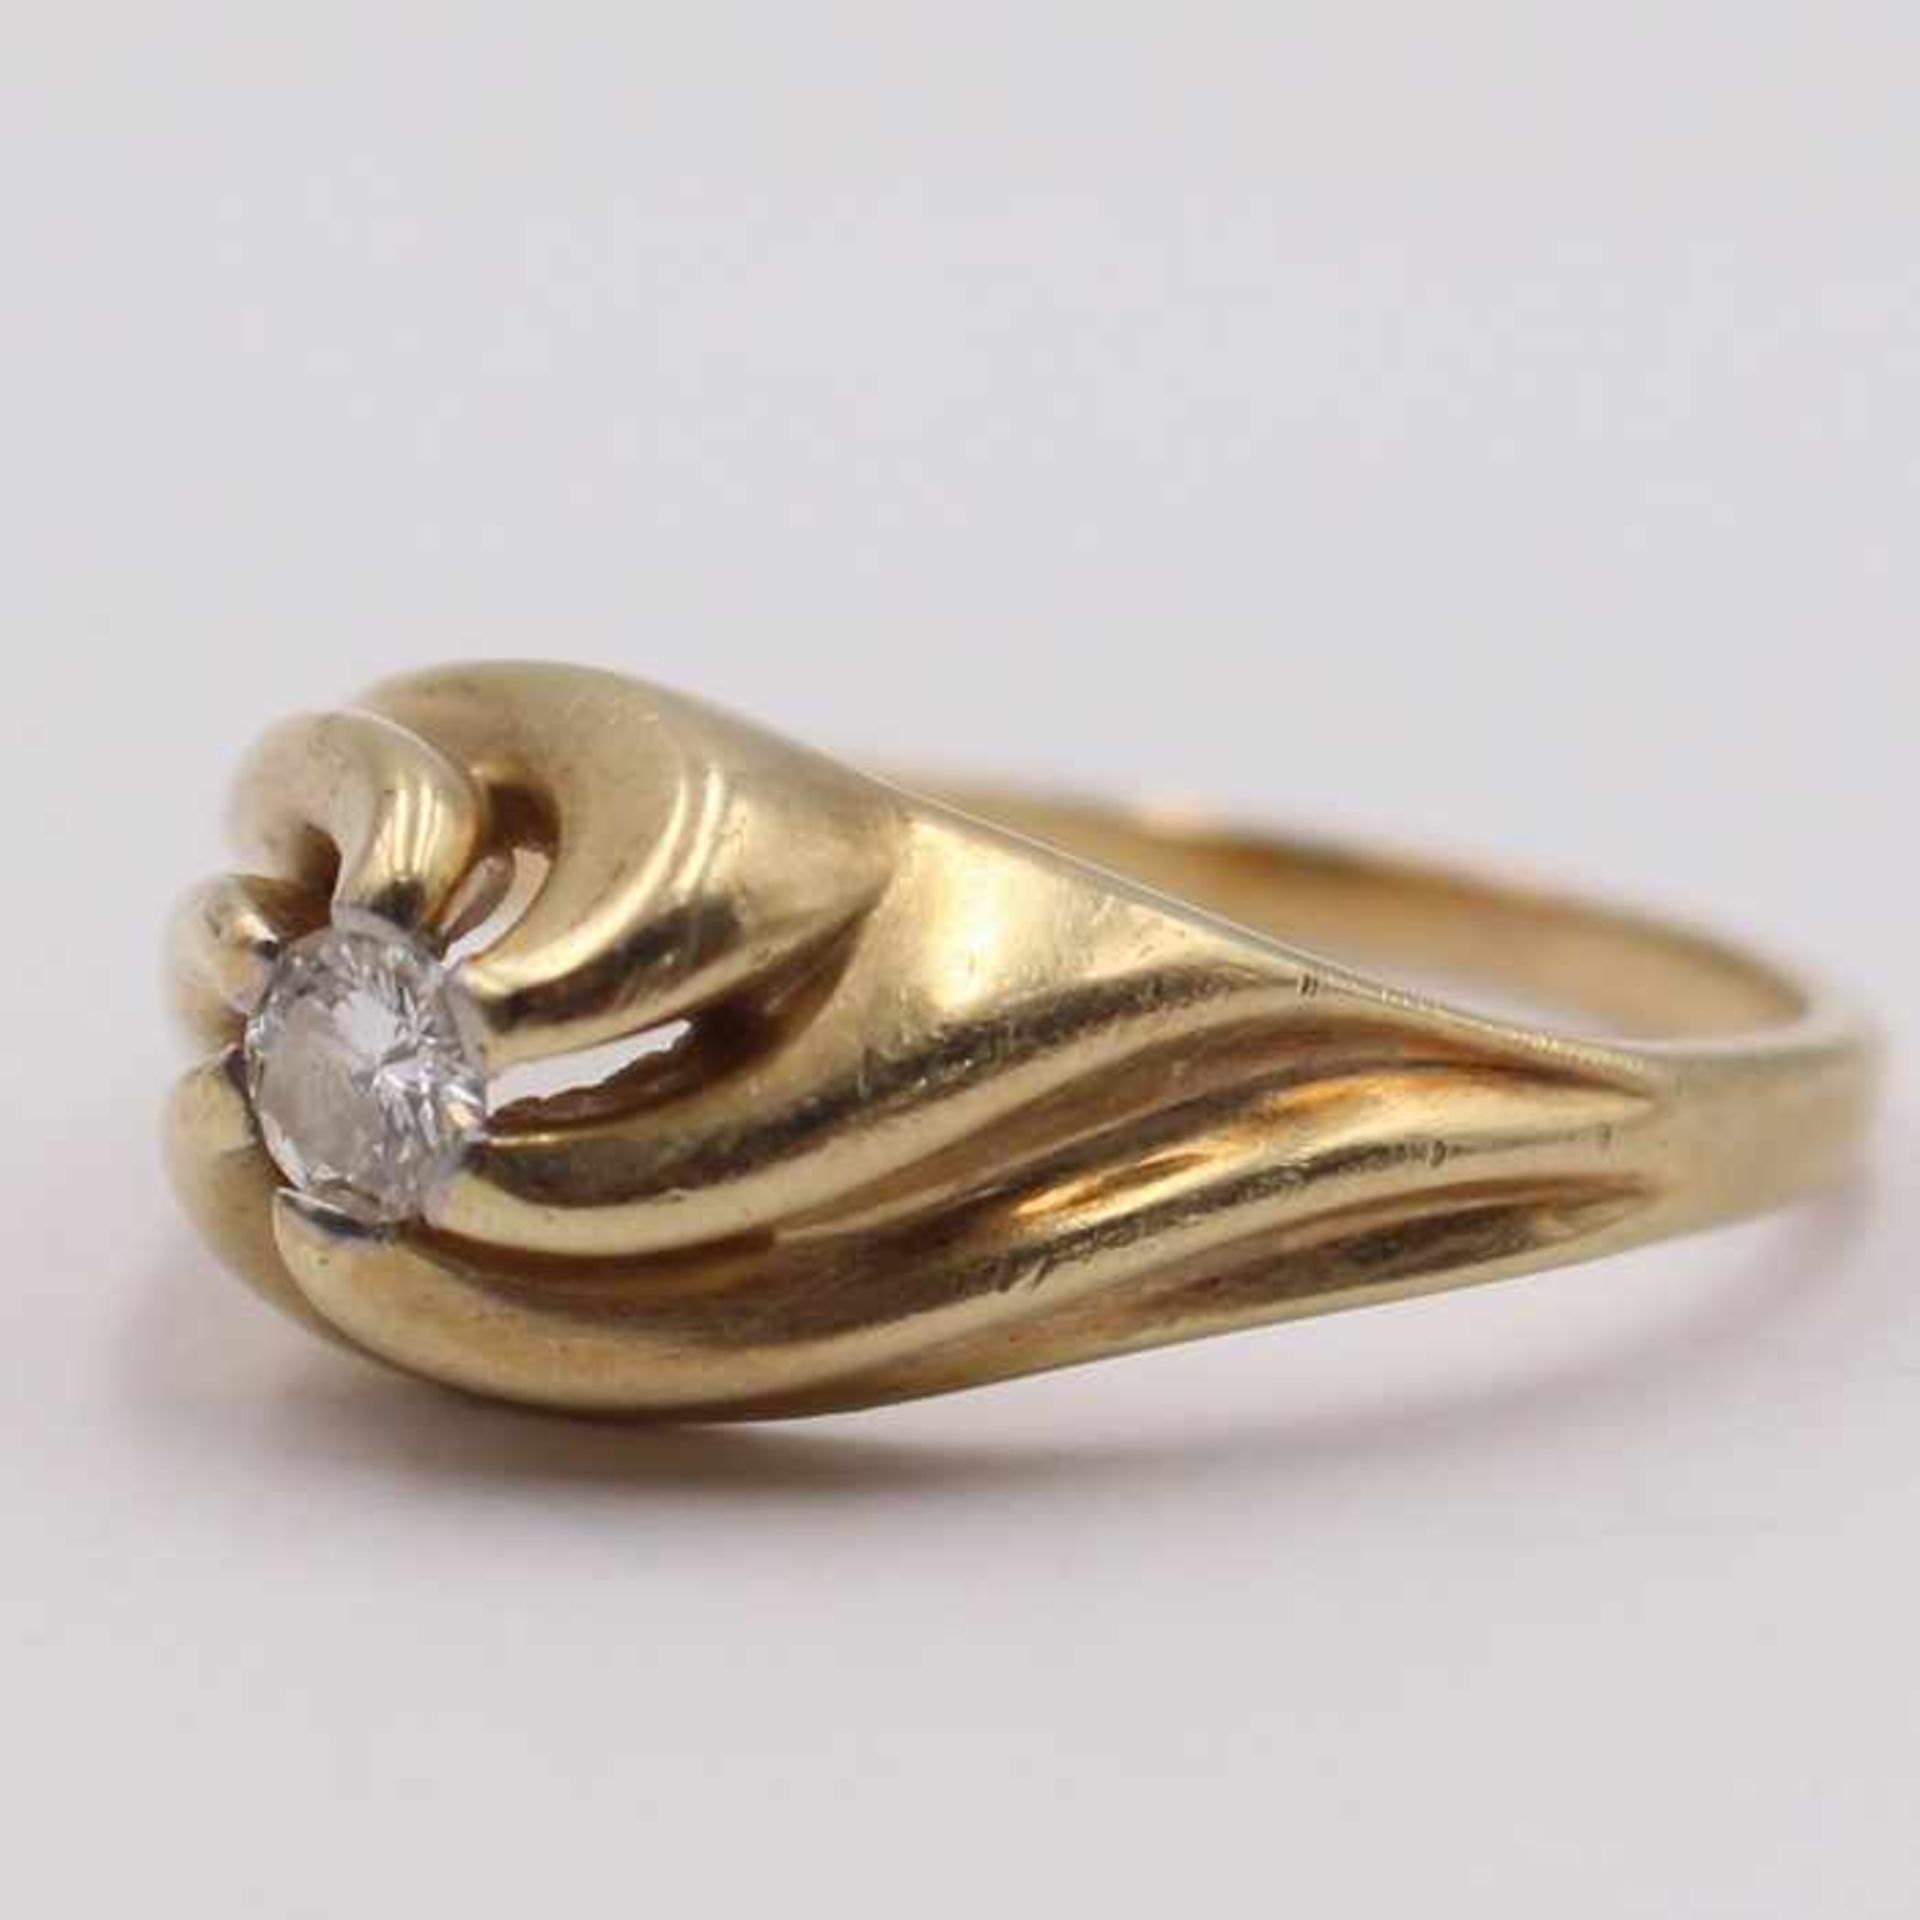 Damenring - DiamantGG 585, floral geschwungener Ringkopf, tlw. durchbrochen, mittig besetzt mit